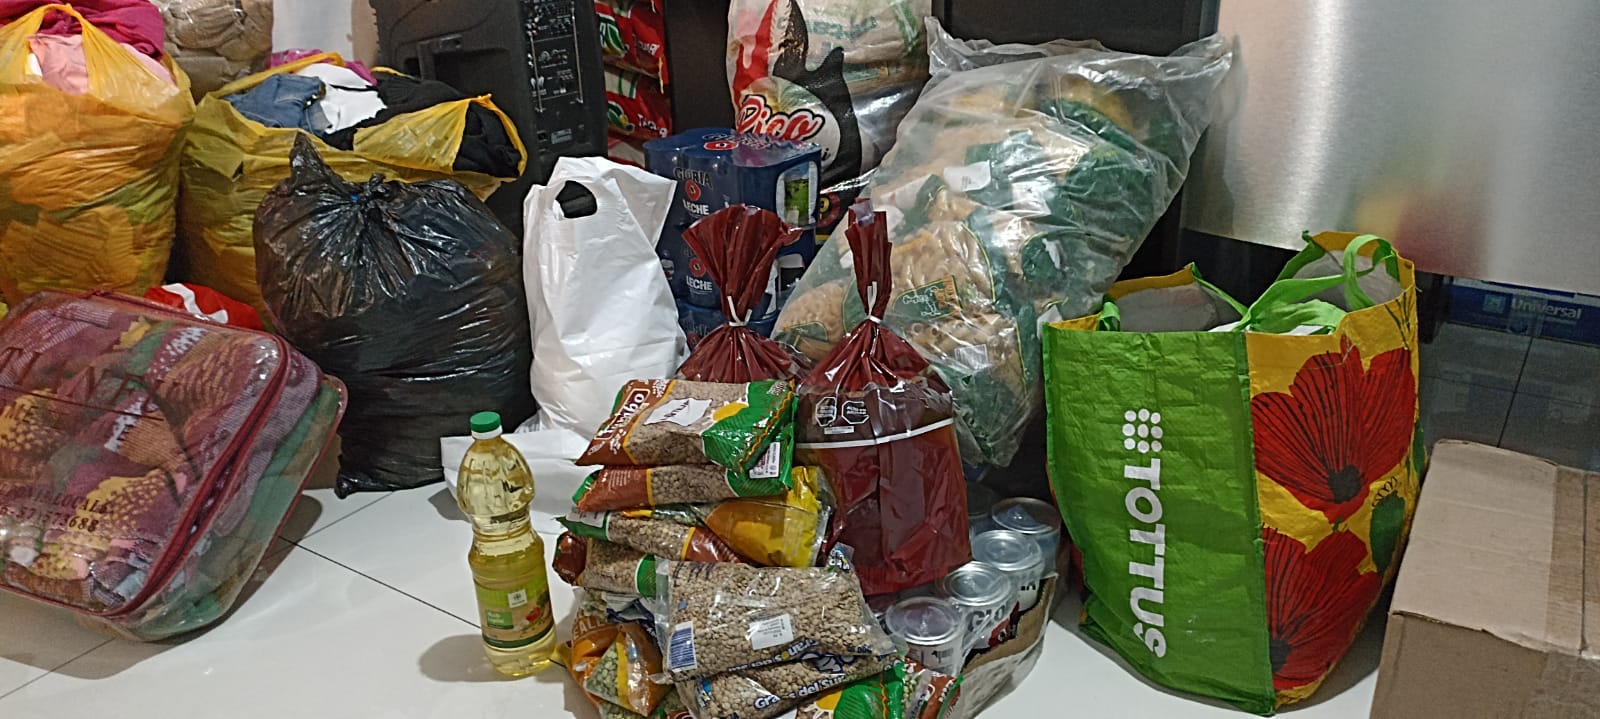 Mercados de Arequipa inician recoleccin de donaciones para damnificados en Secocha